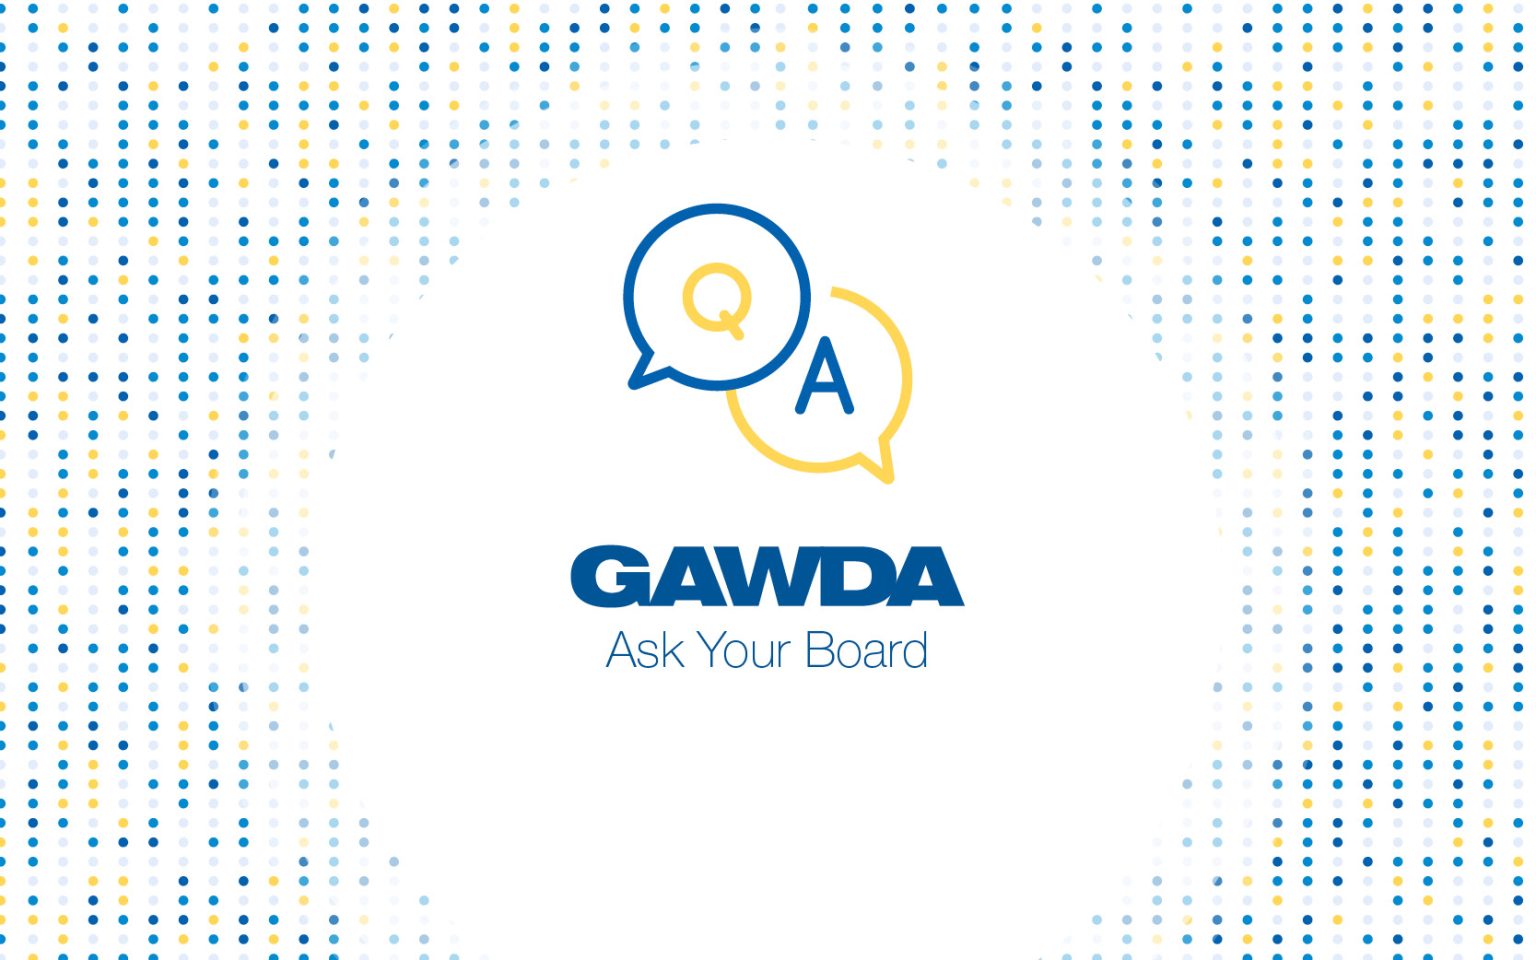 Ask Your GAWDA Board